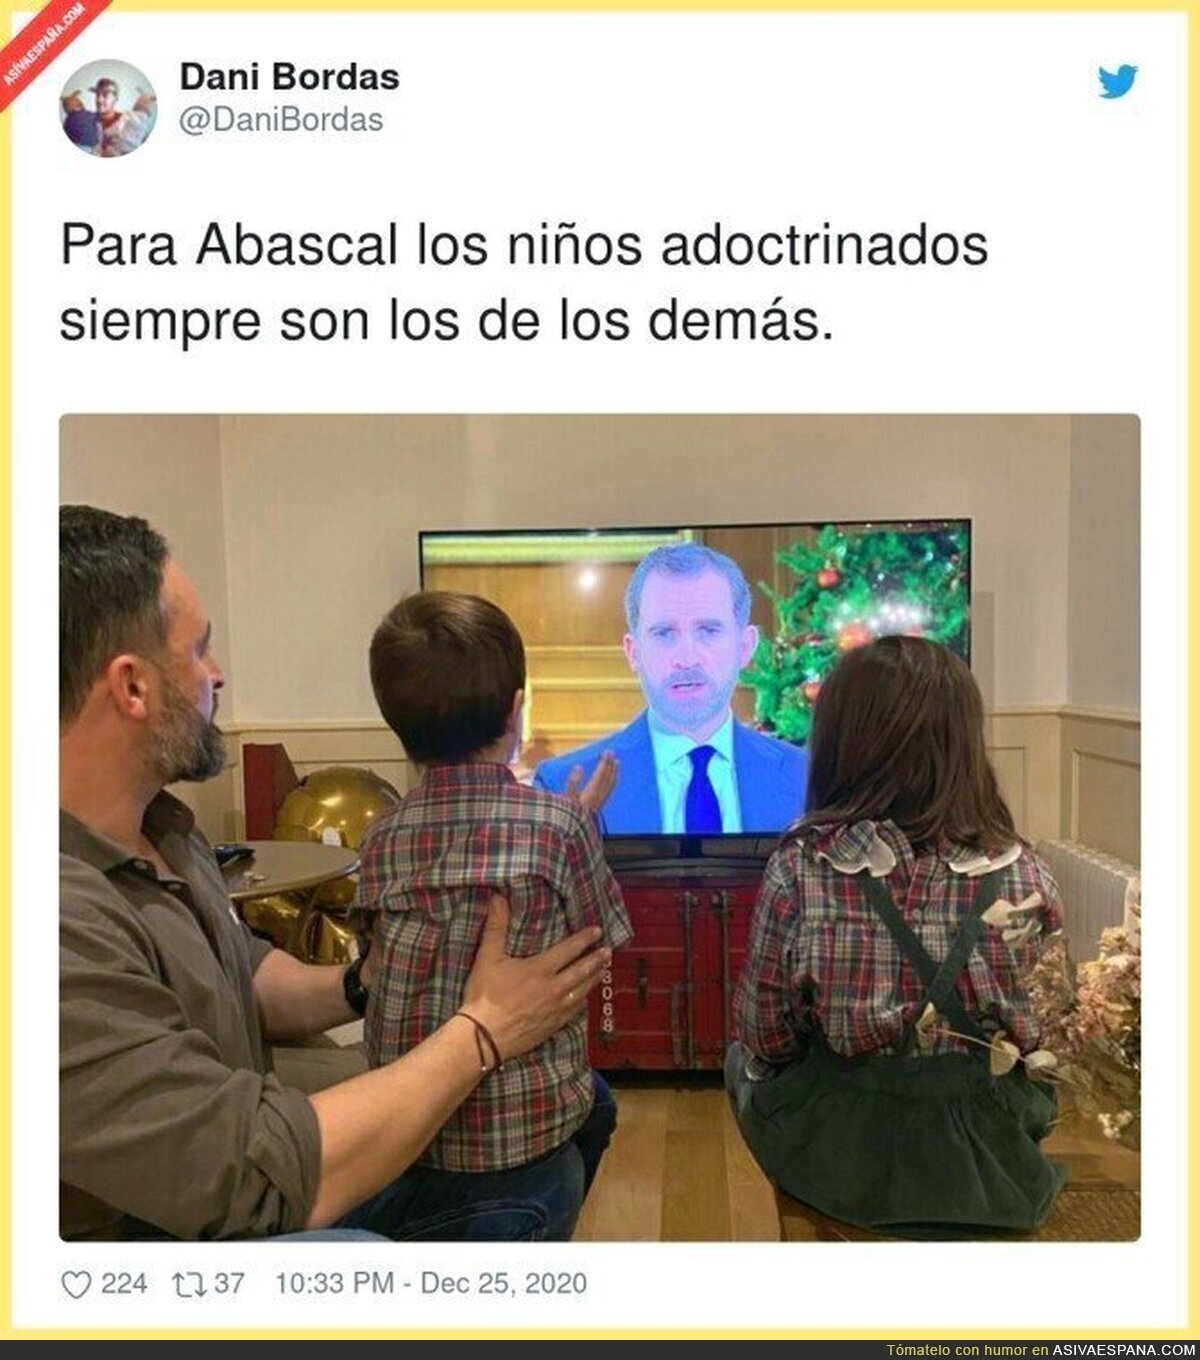 Malditos catalanes adoctrinando a sus hijos